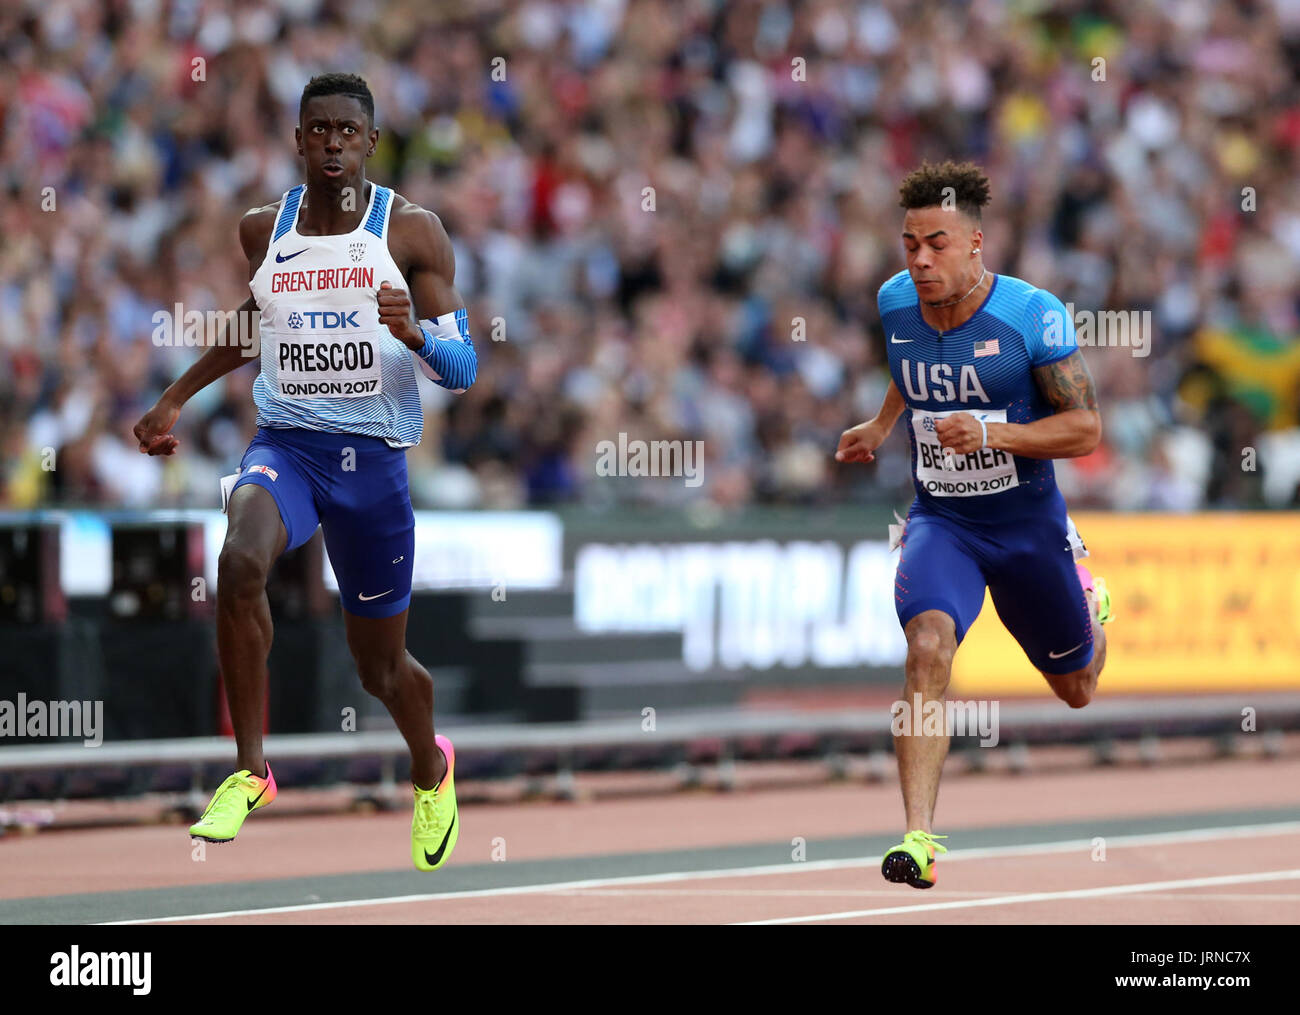 Great Britain's Reece Prescod (gauche) se classe deuxième dans l'épreuve du 100m demi-finale une chaleur au cours de la deuxième journée des Championnats du monde IAAF 2017 à la London Stadium. Banque D'Images